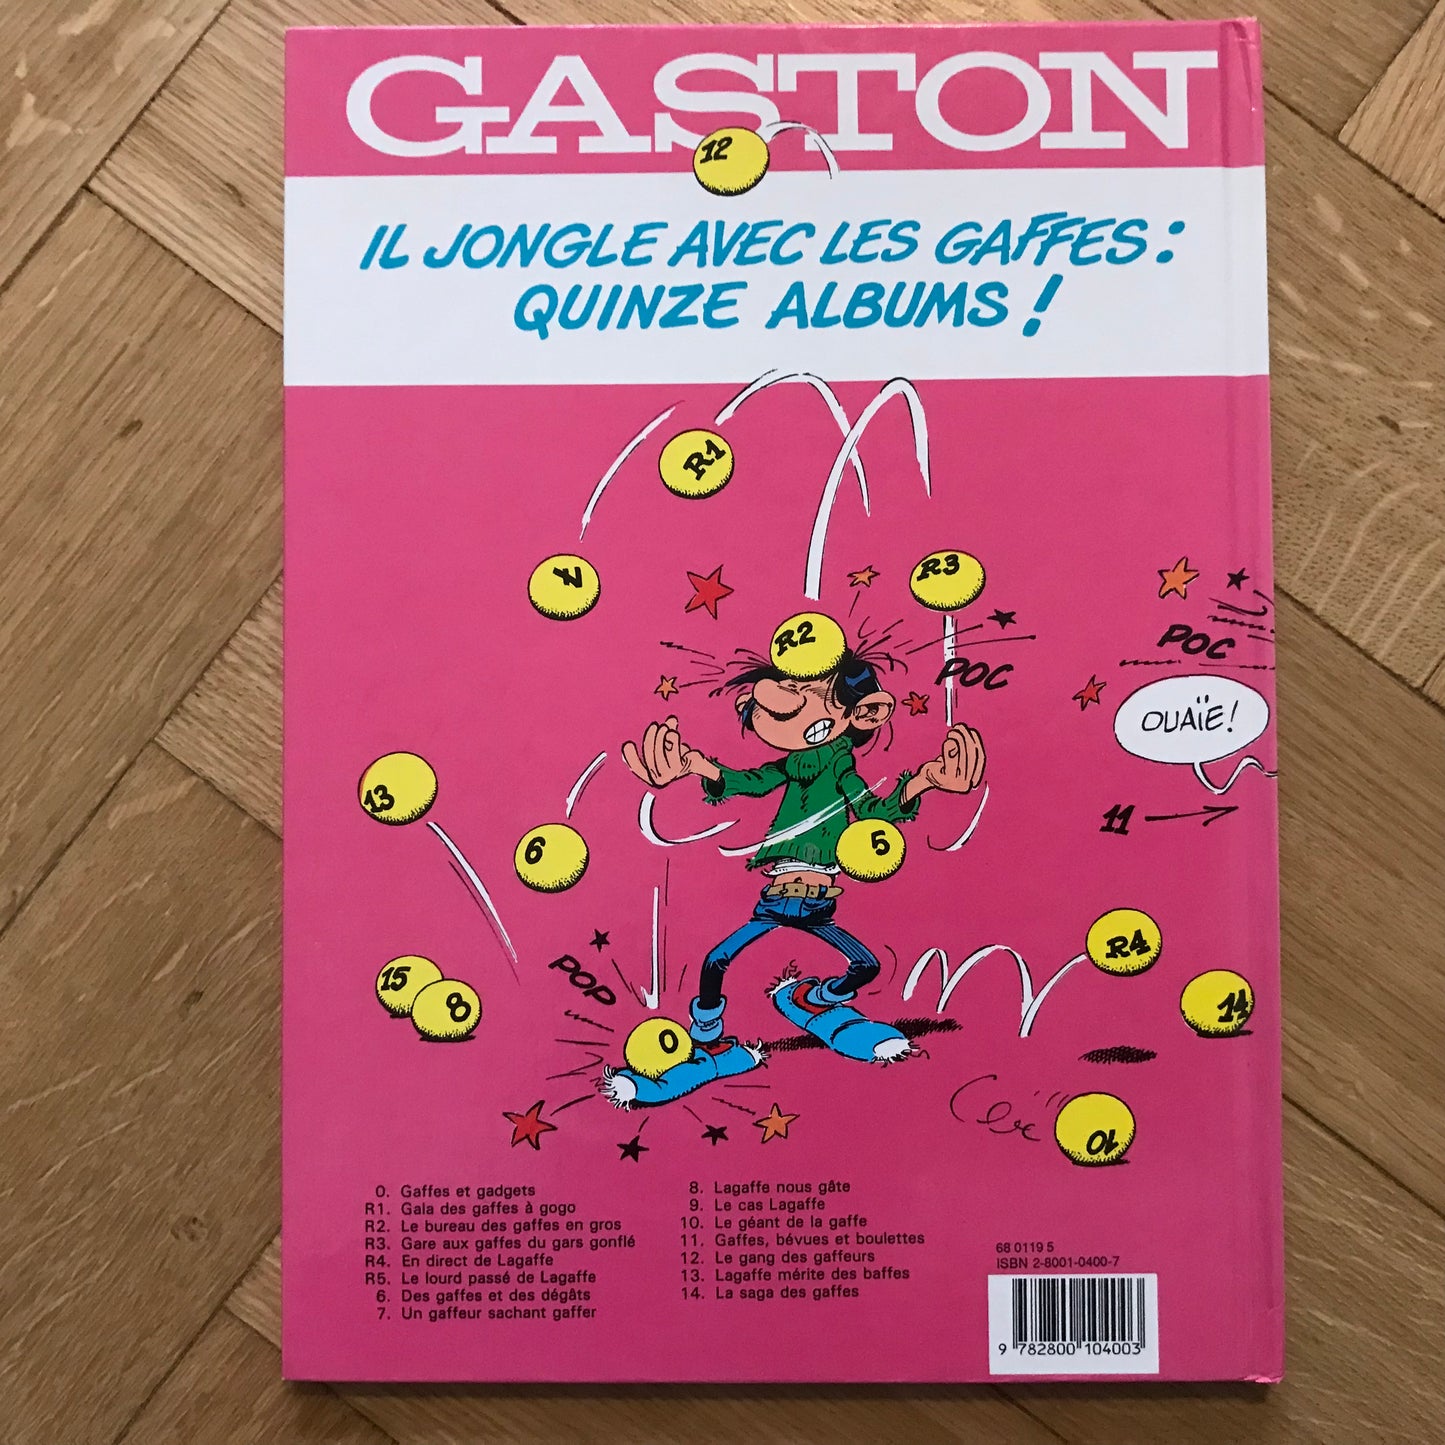 Gaston T12, Le gang des gaffeurs - Franquin